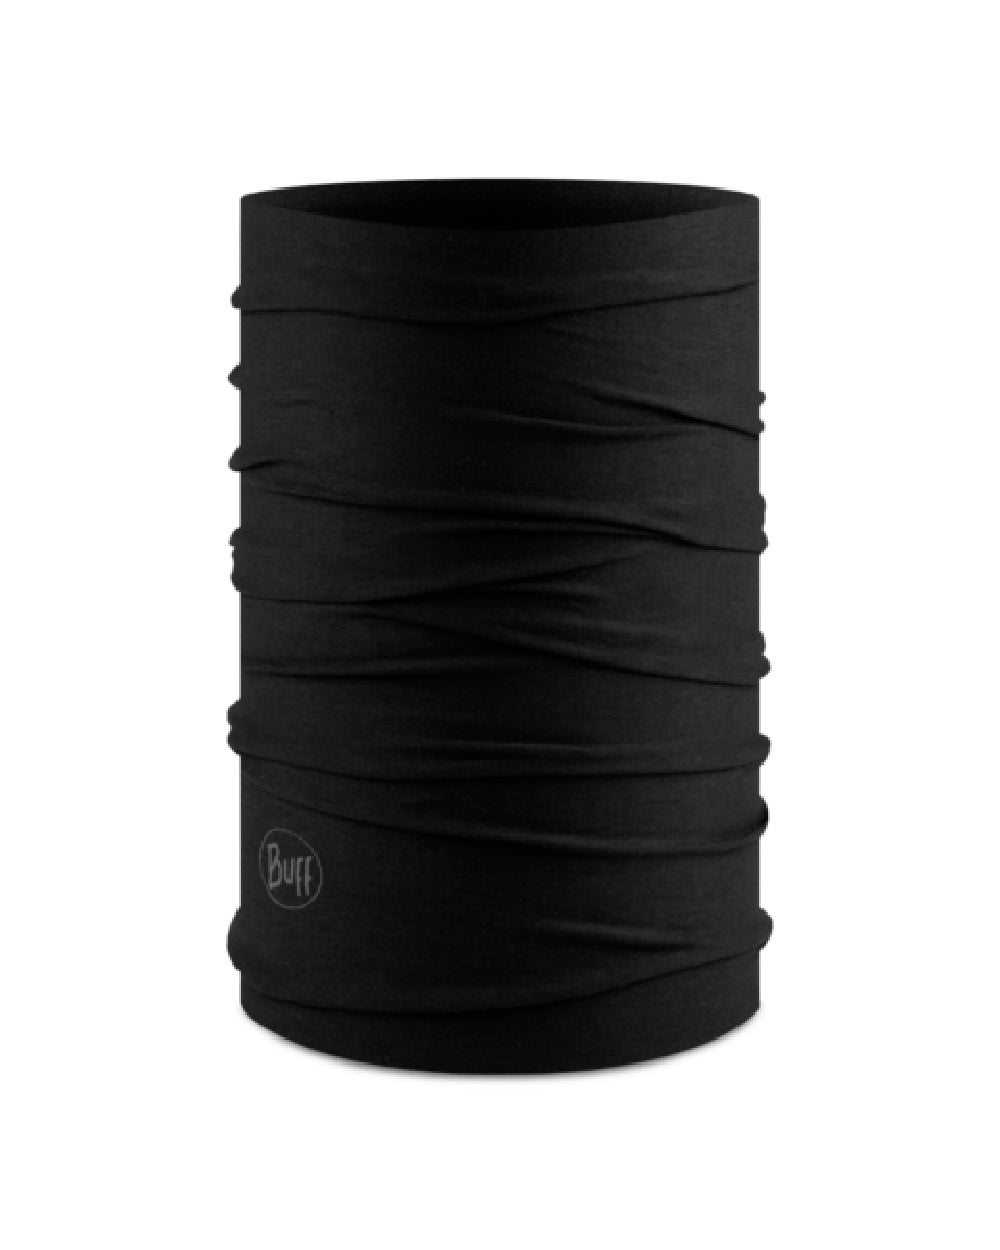 Buff Original EcoStretch Neckwear in Solid Black 